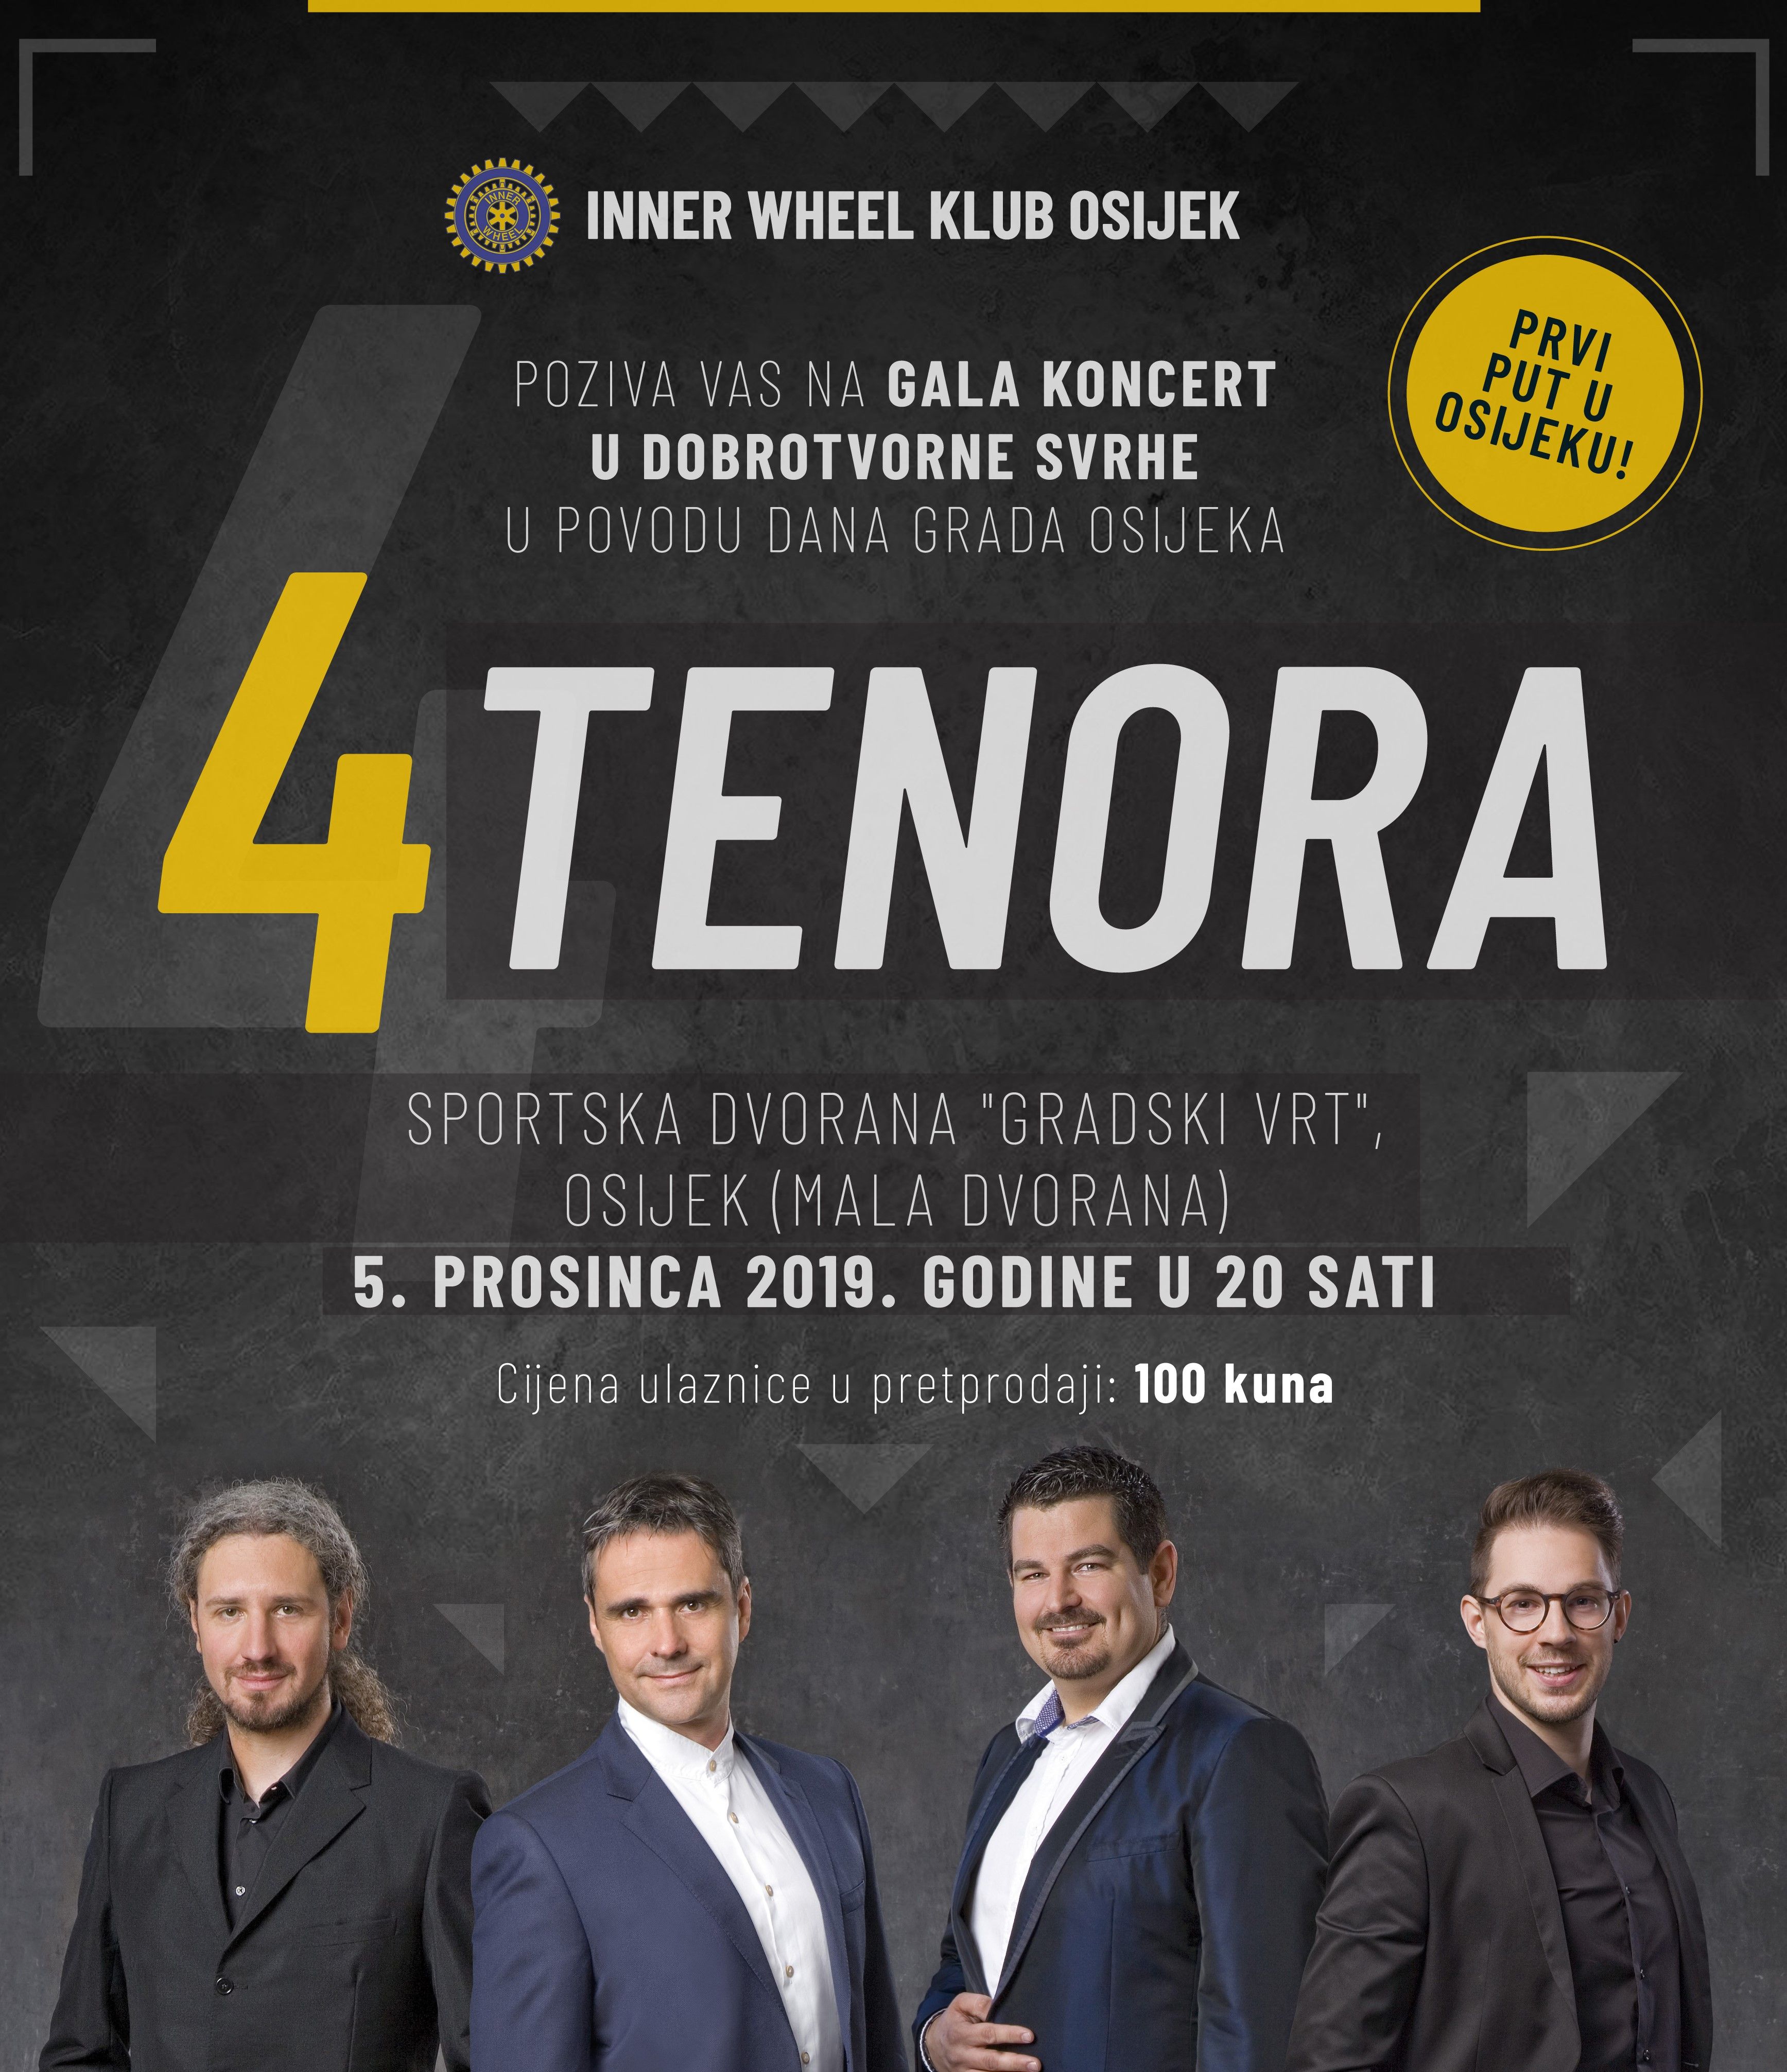 Popularni hrvatski ansambl 4 TENORA dolazi u Osijek (NAJAVA